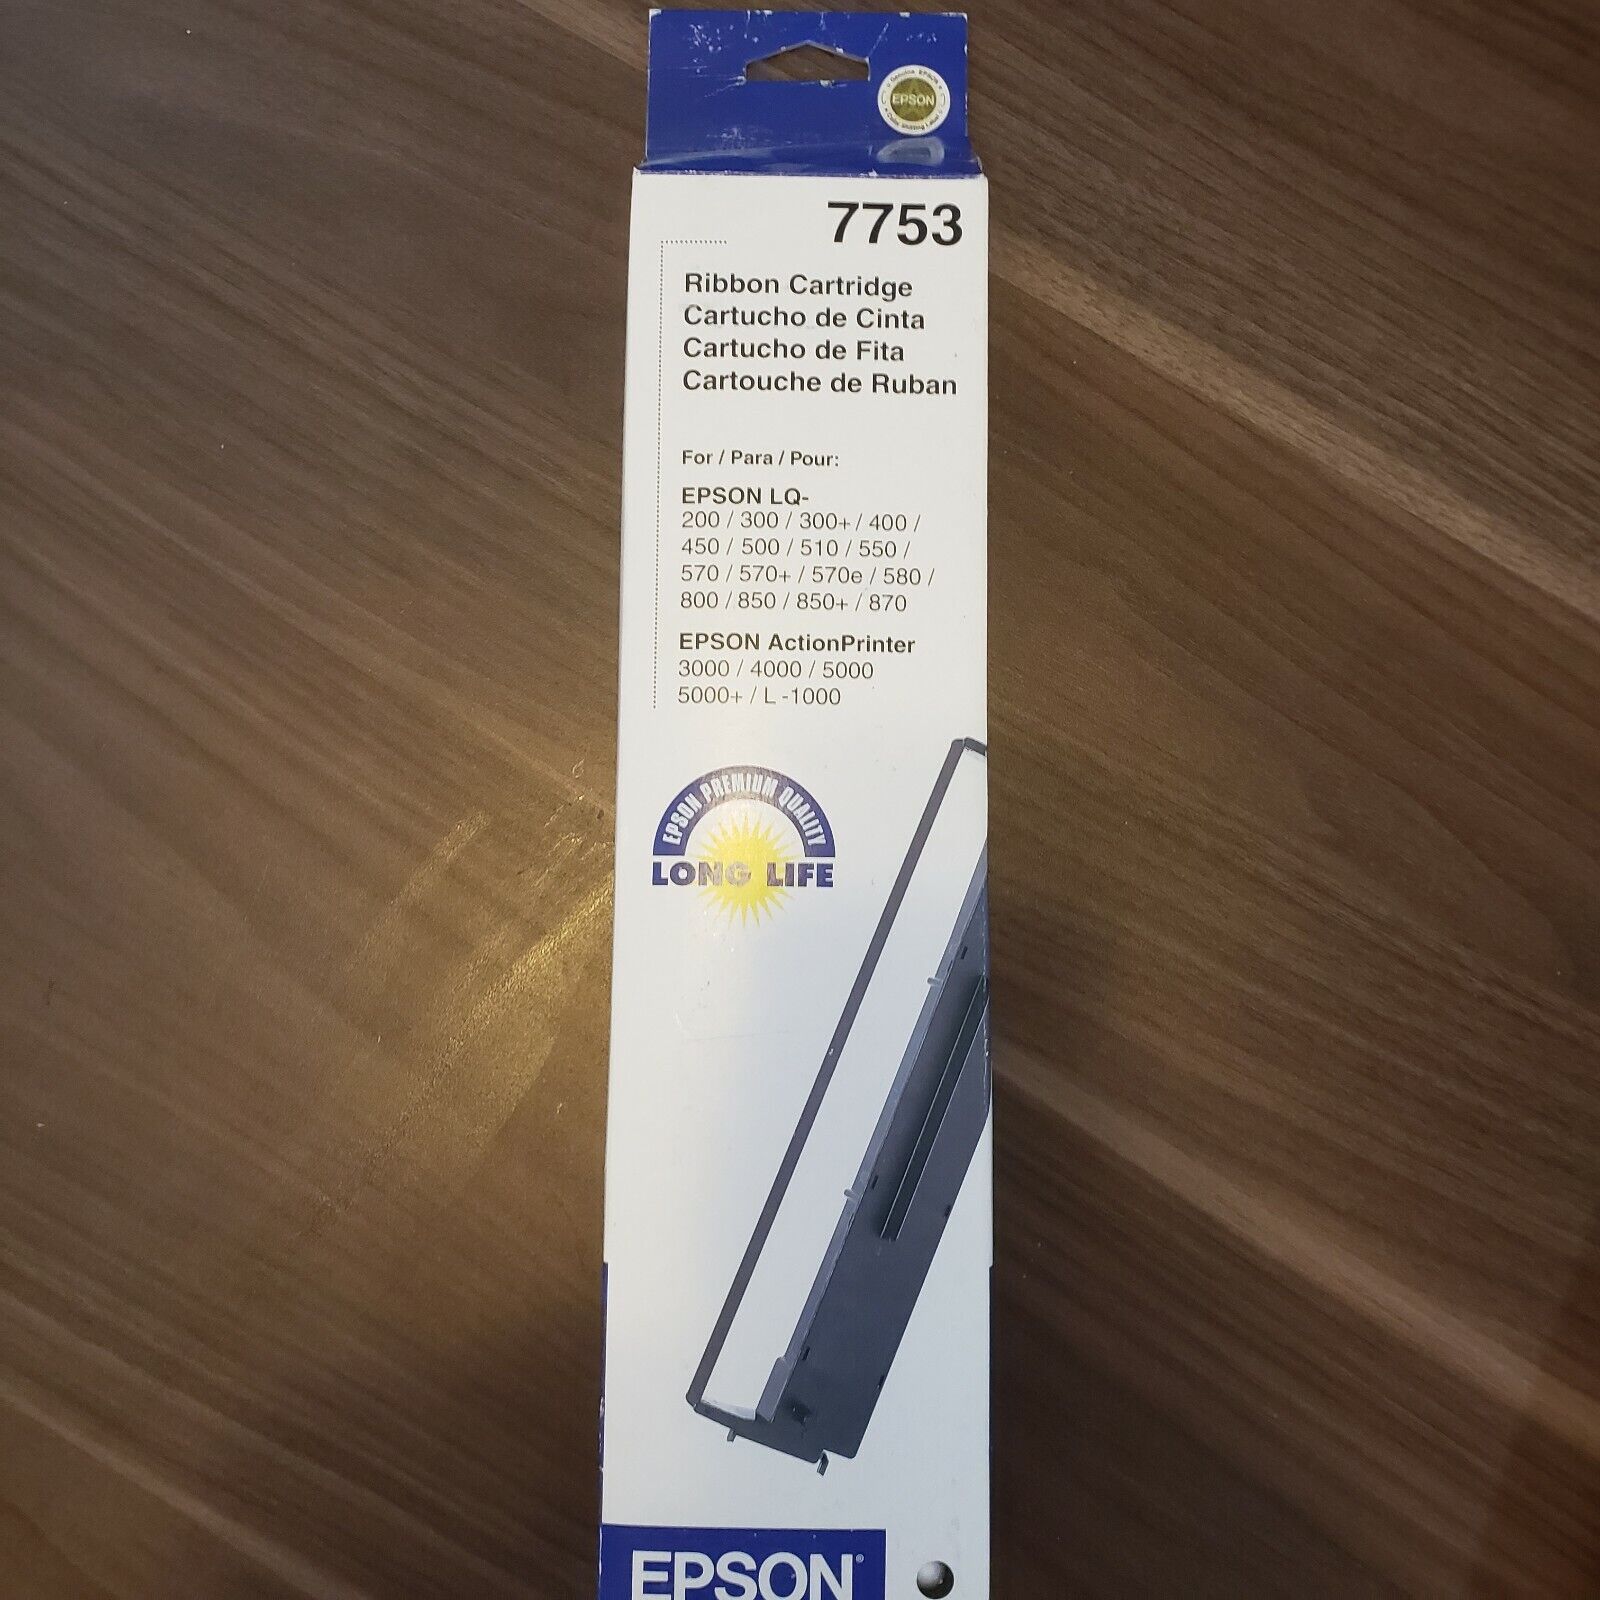 Epson 7753 Ribbon Cartridge Ink, Sealed